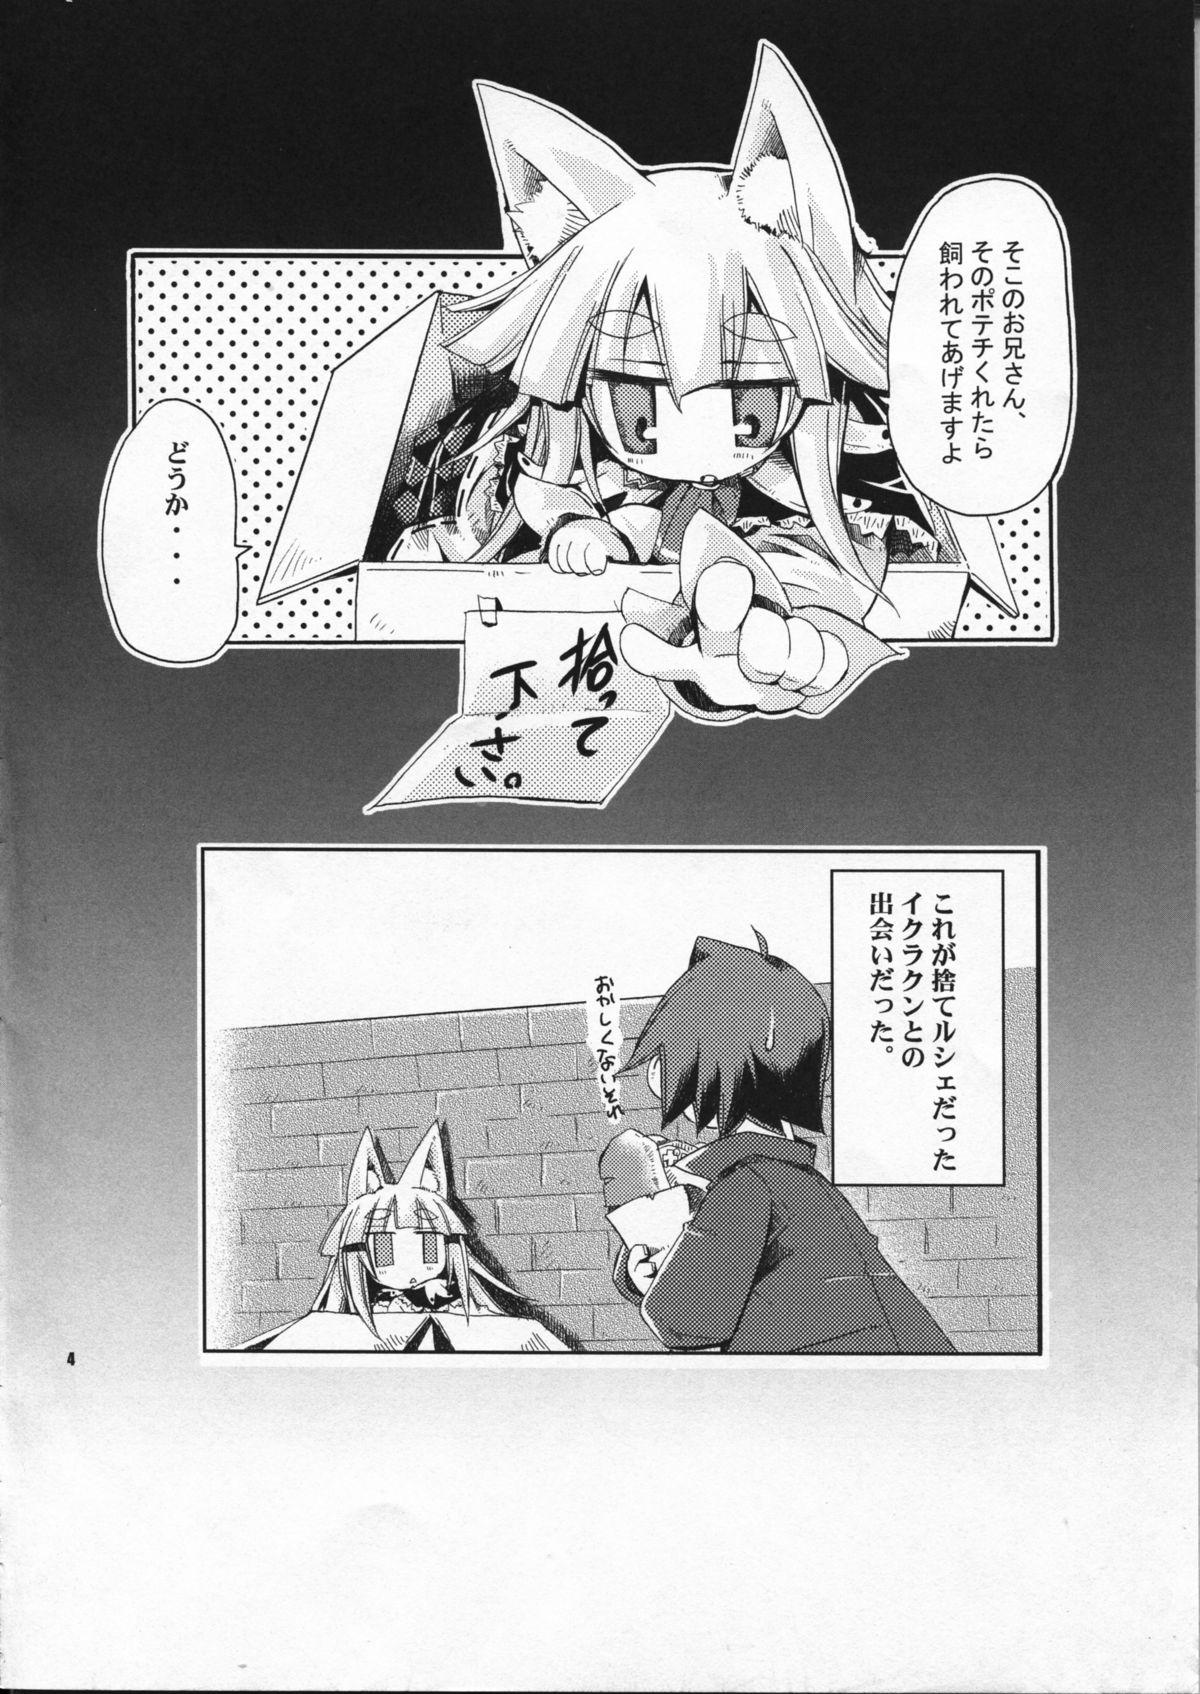 Fuck Pussy Wagaya no Ikura no Kaikata - 7th dragon Cheating Wife - Page 4